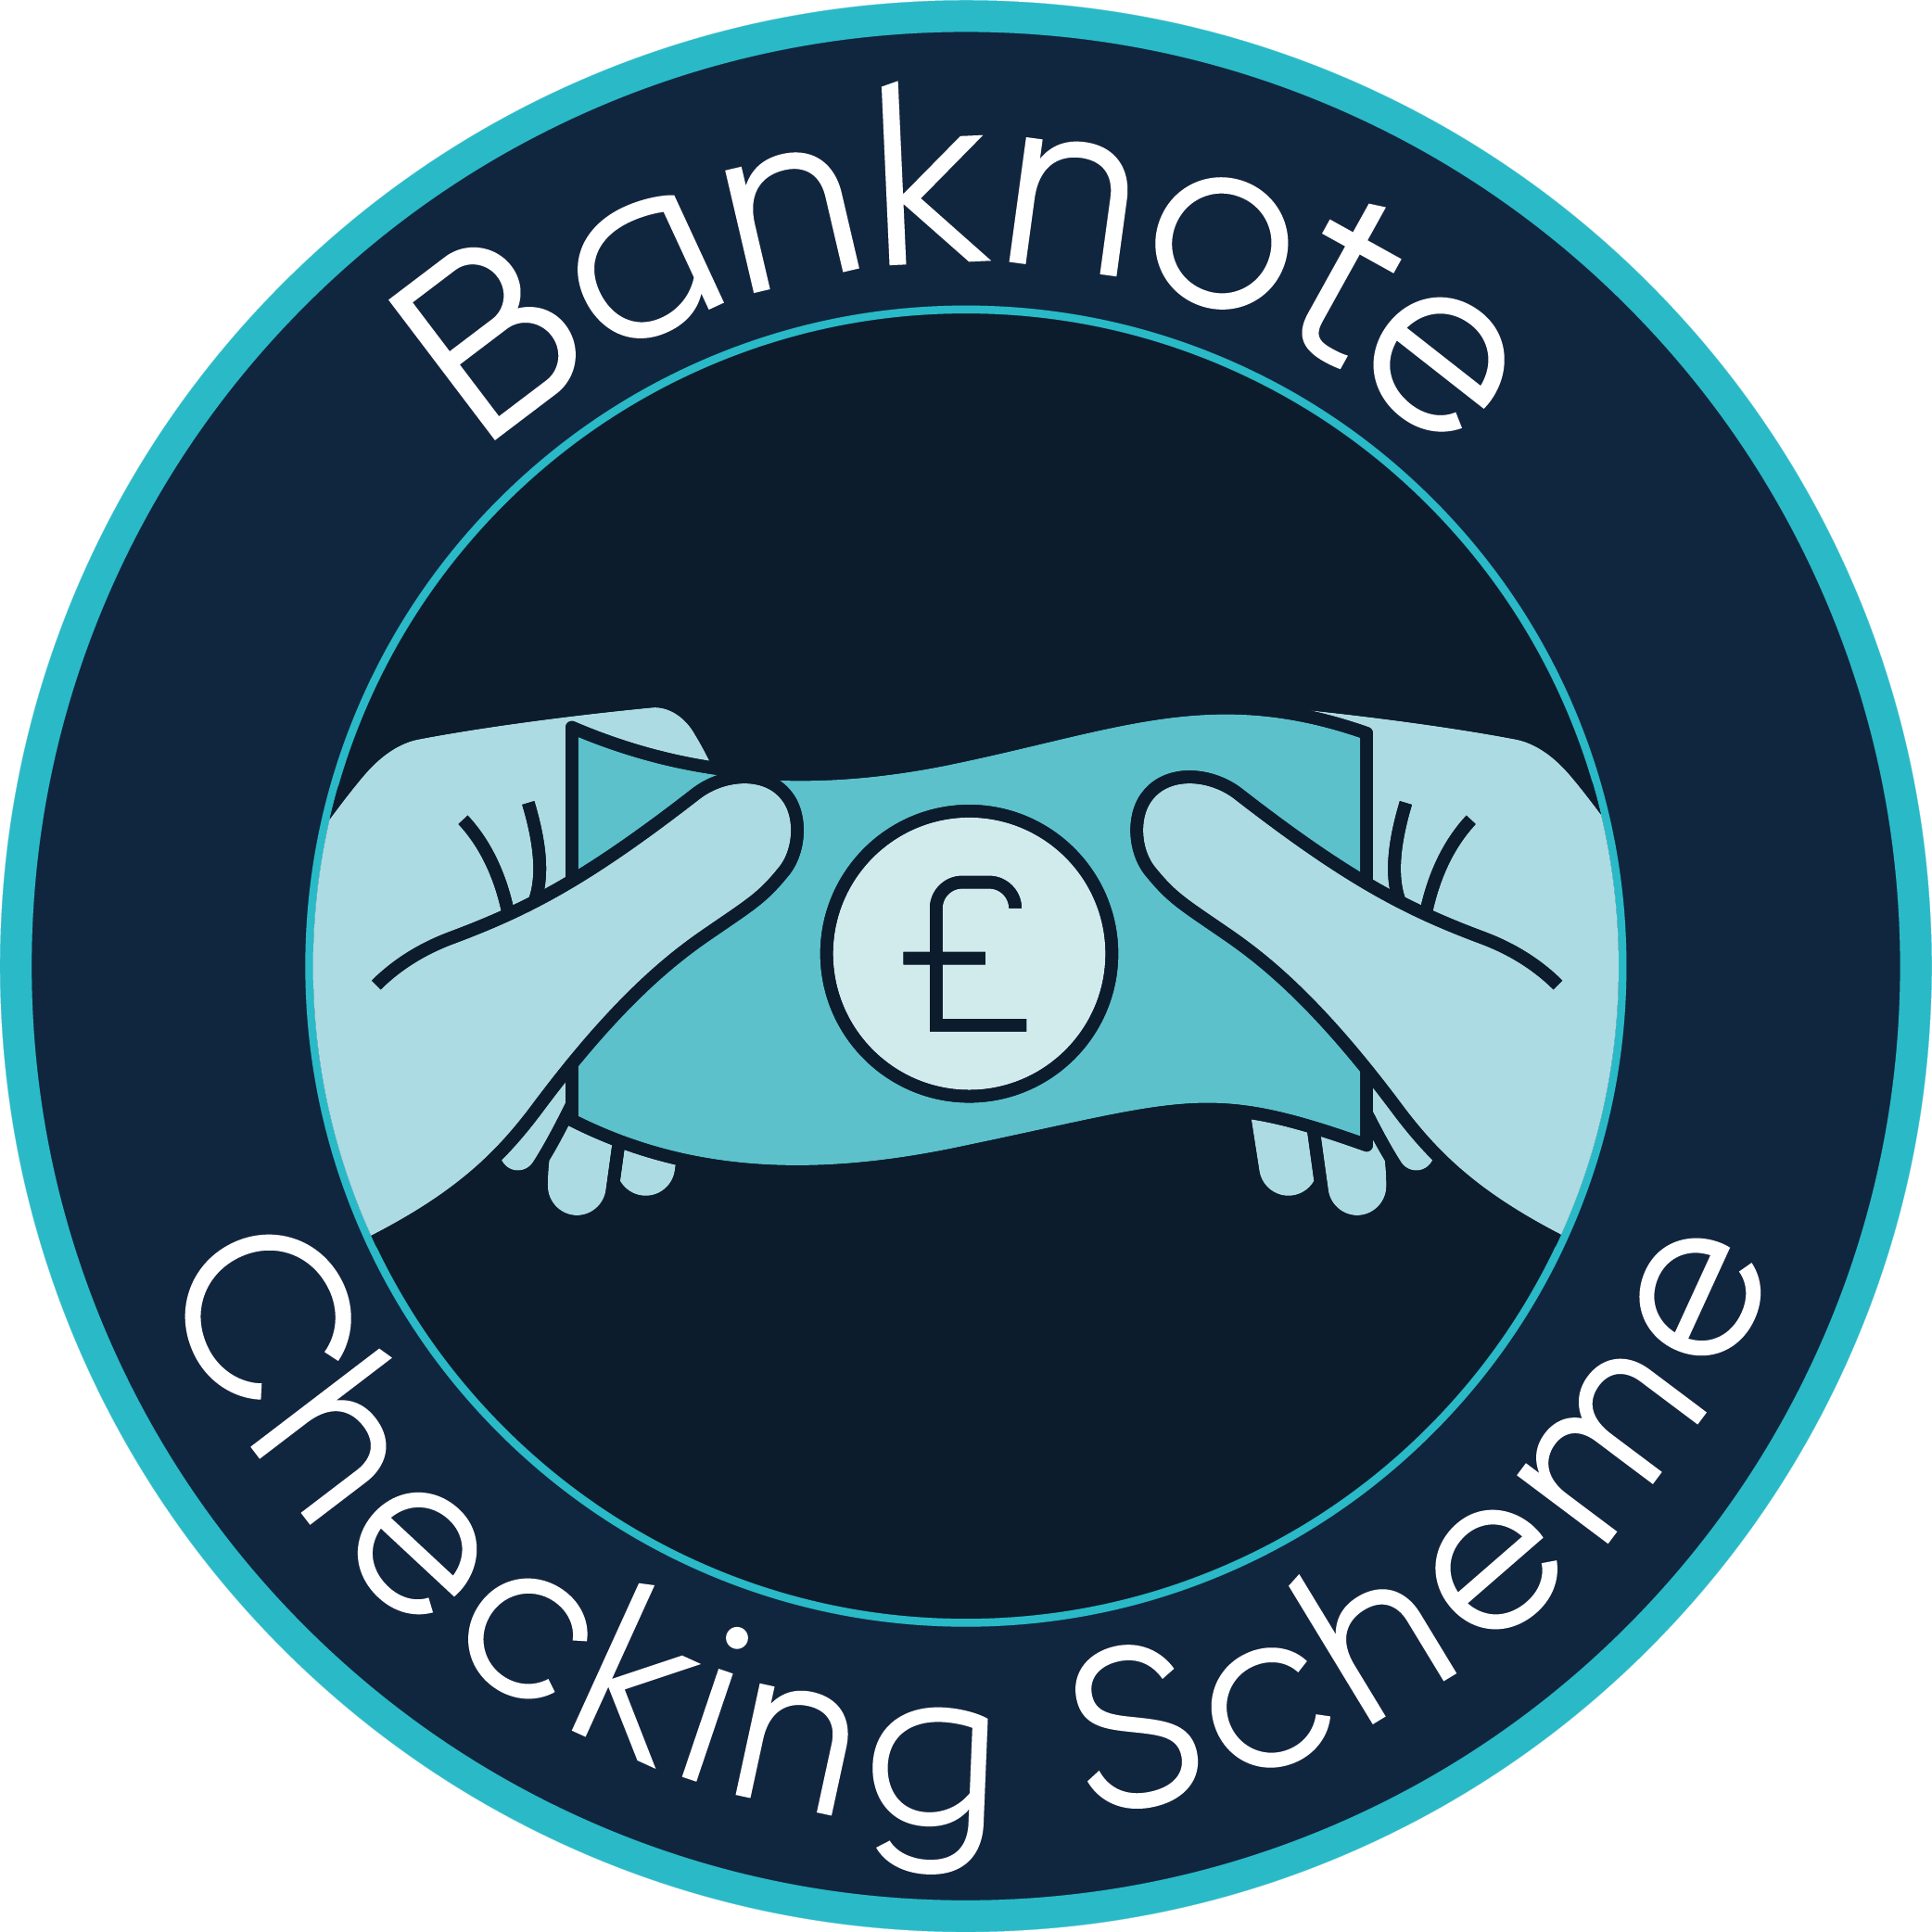 Banknote Checking Scheme